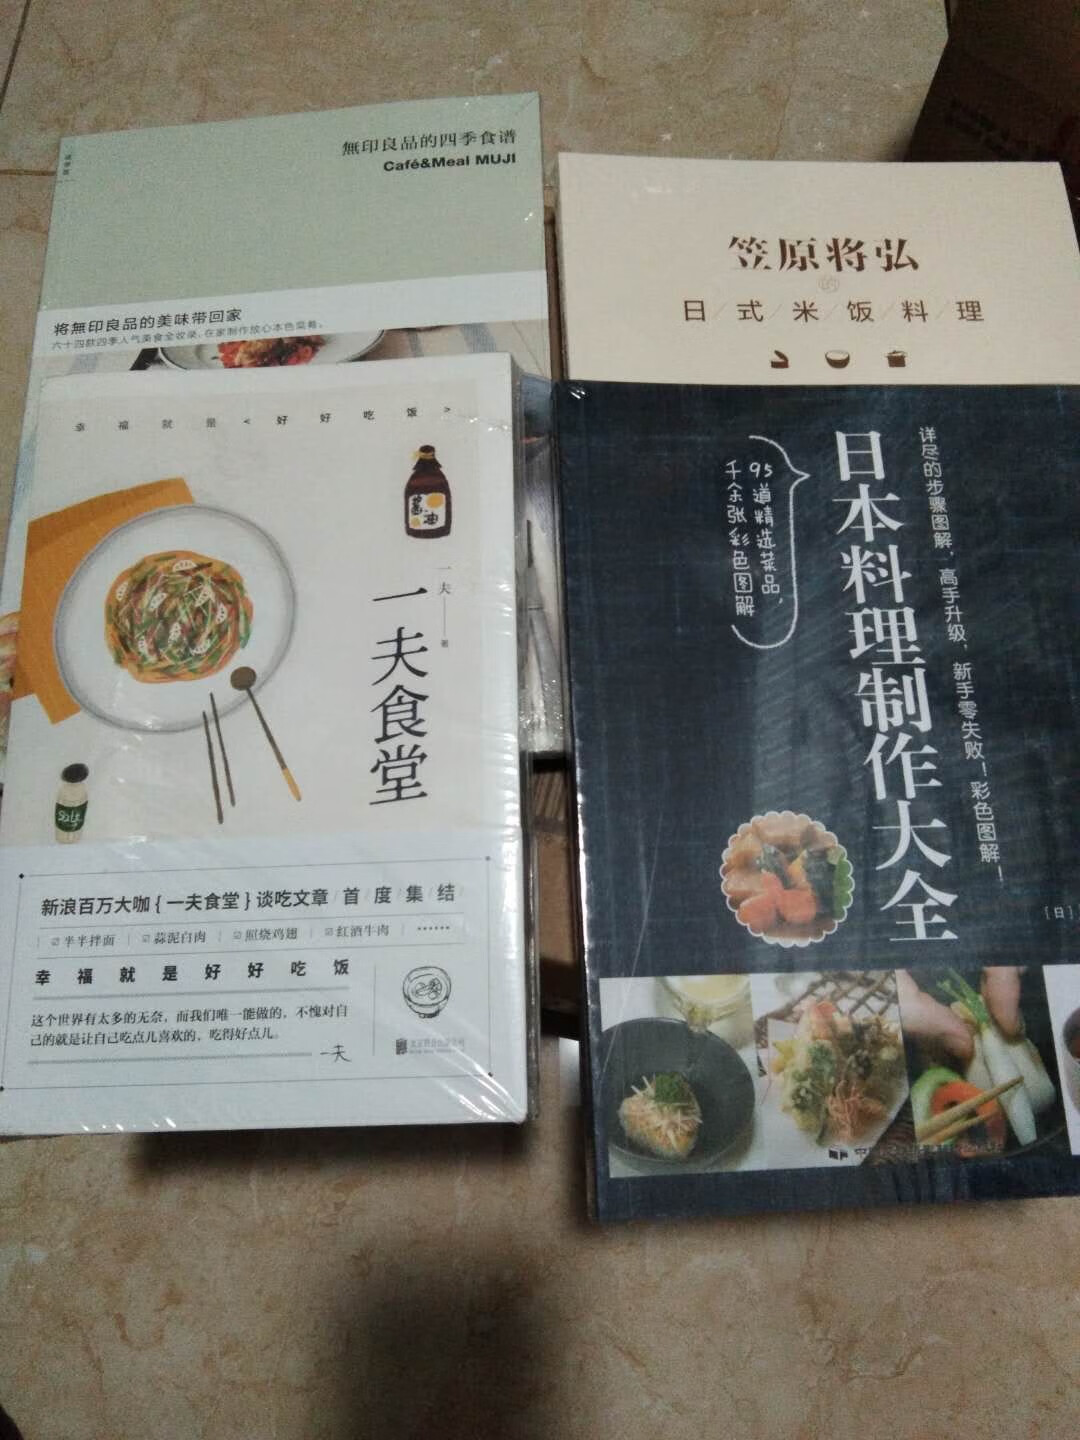 一次买了四本书～ 想好好学学做各种各样的饭菜～ 还不错～ 赞～